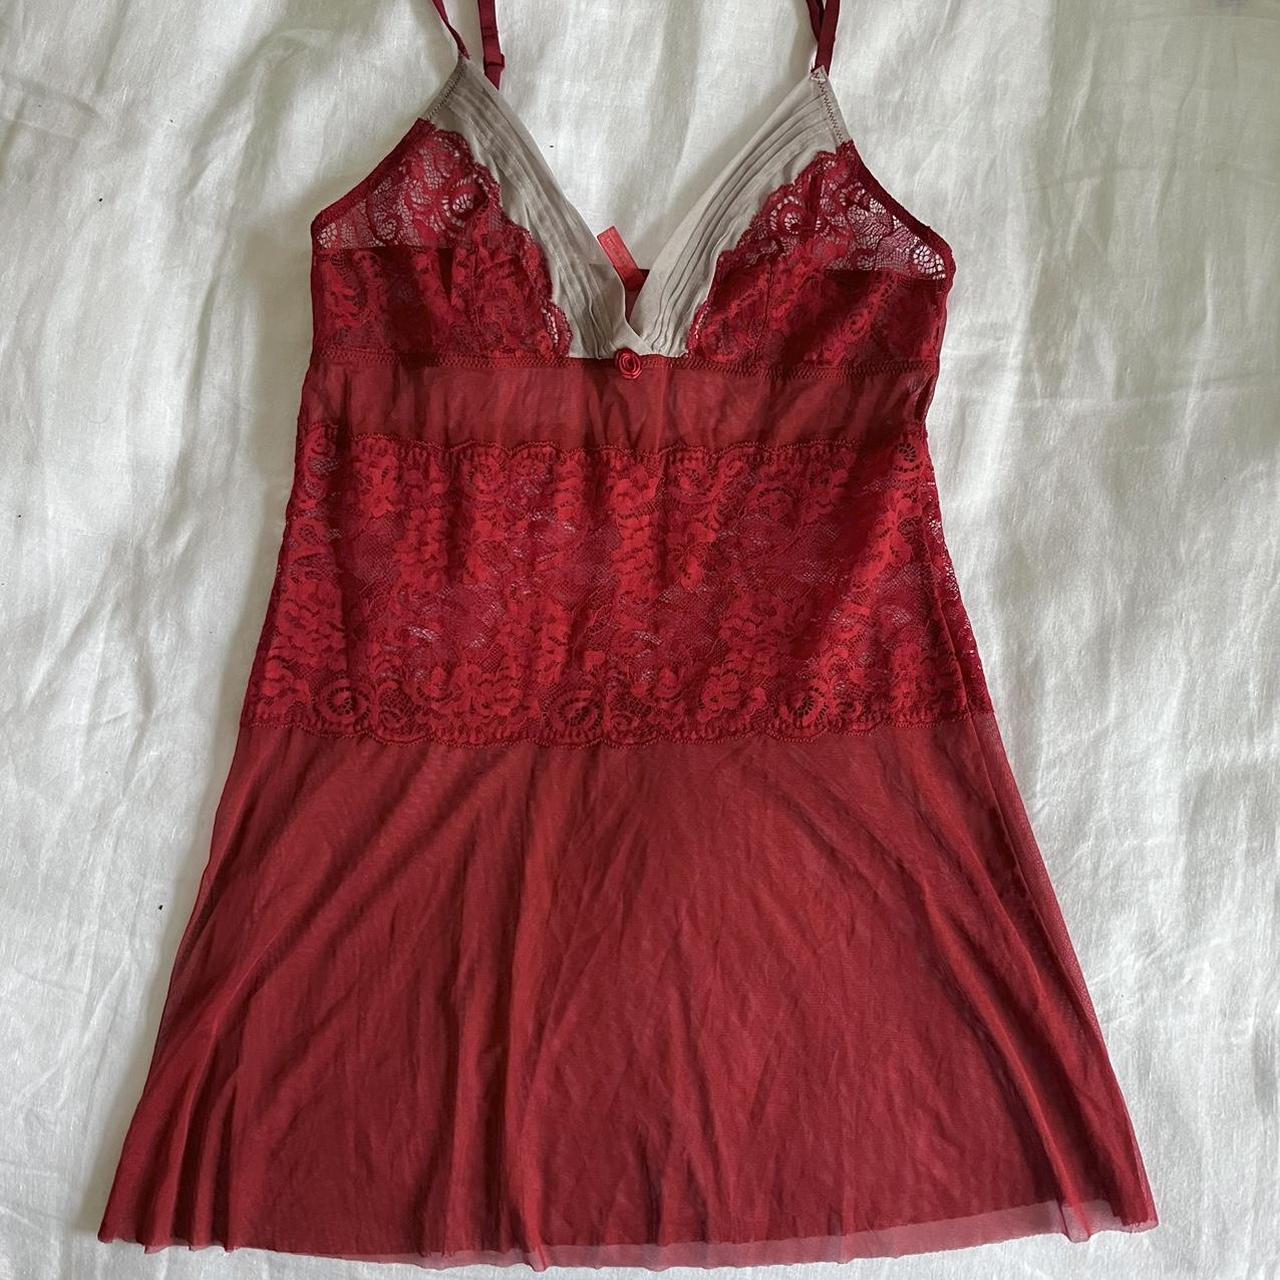 Red babydoll sheer mesh top/dress ️ - Depop